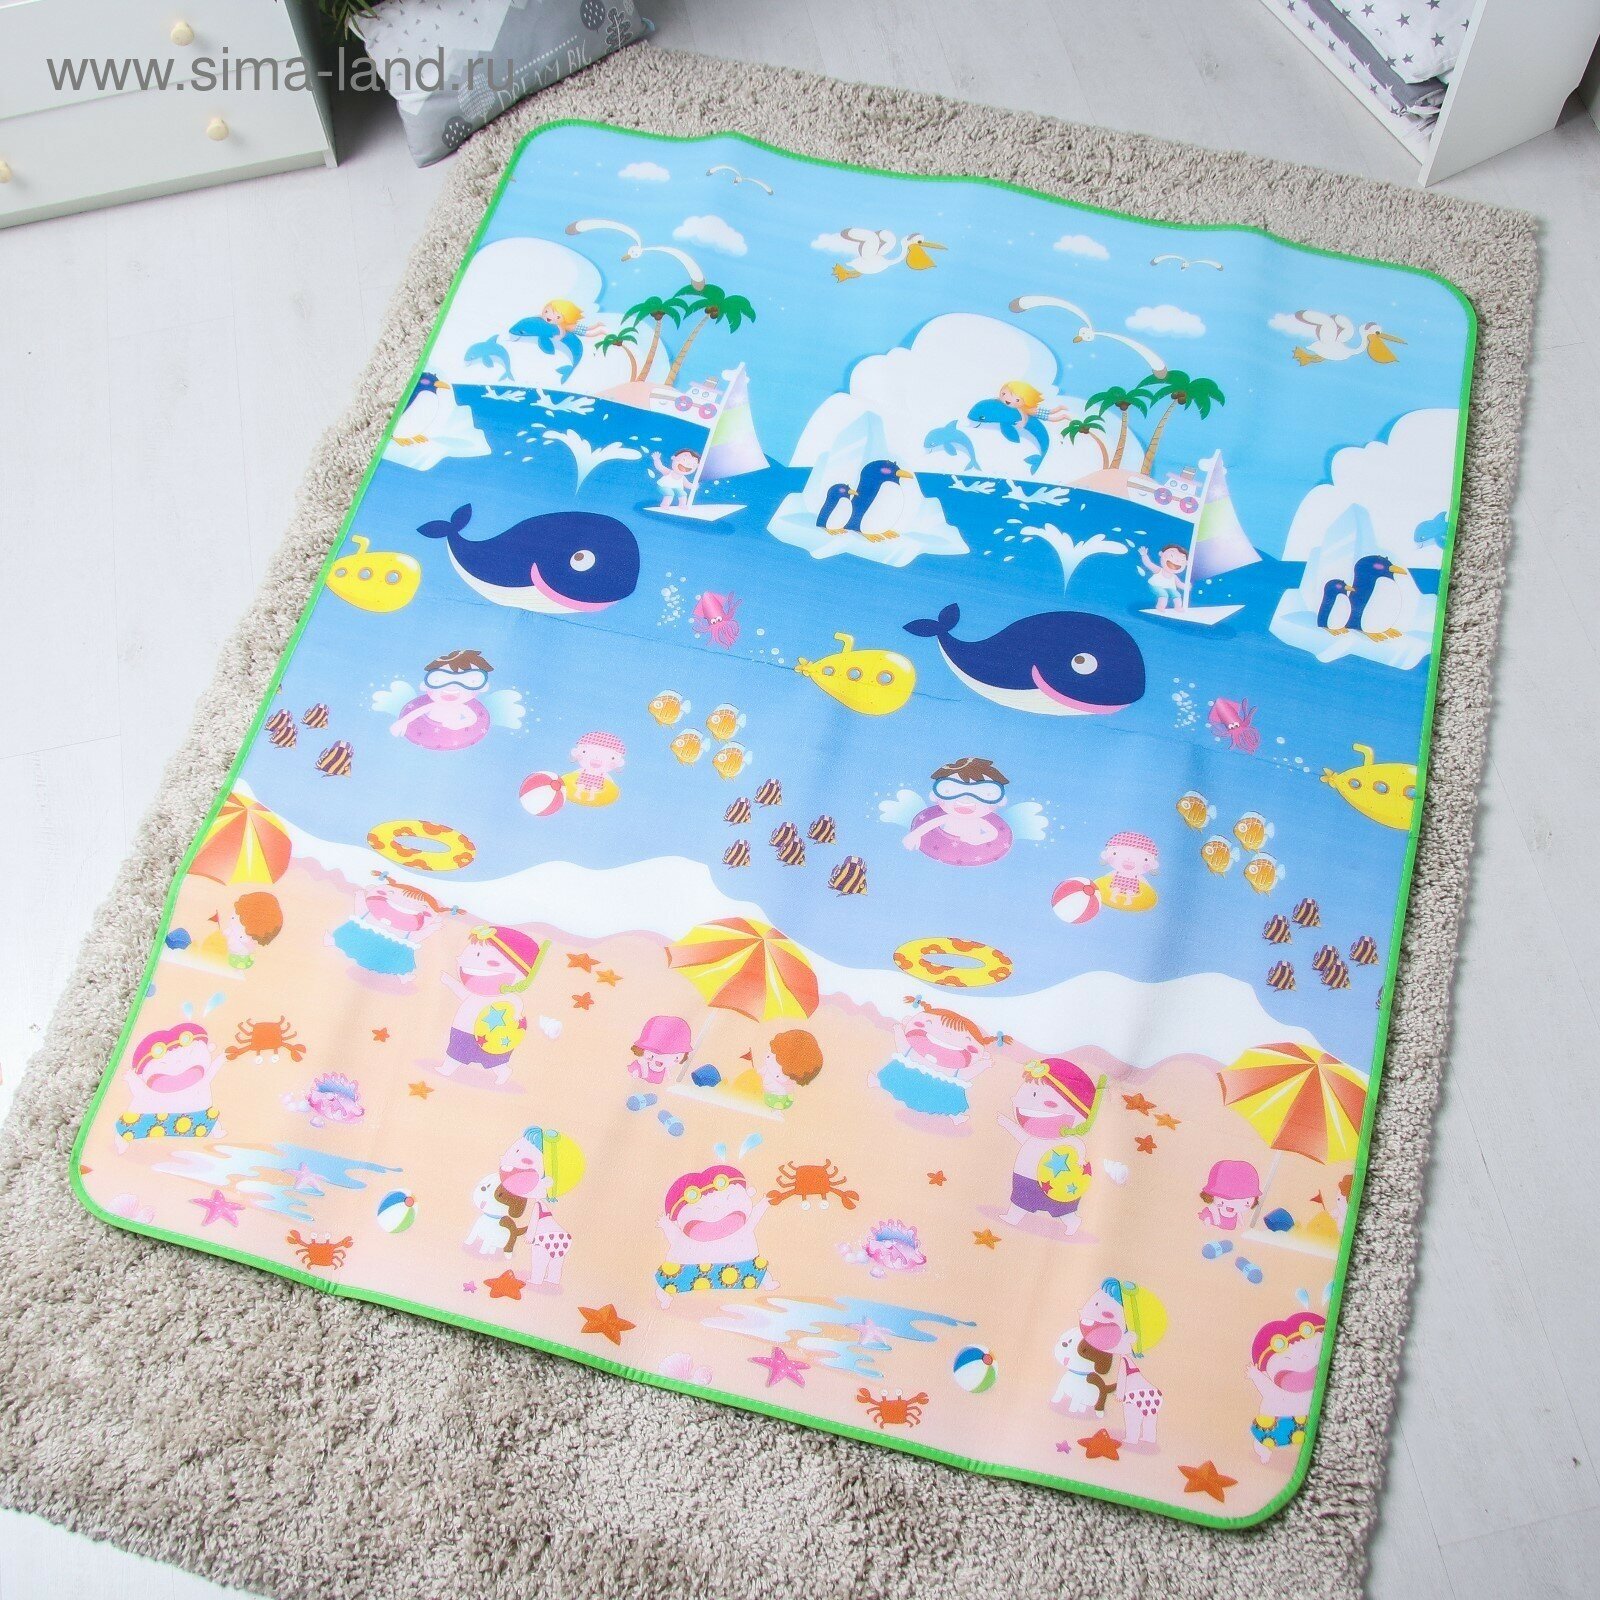 Игровой коврик для детей на фольгированной основе «Море и пляж», размер 180х150x0,5 см,